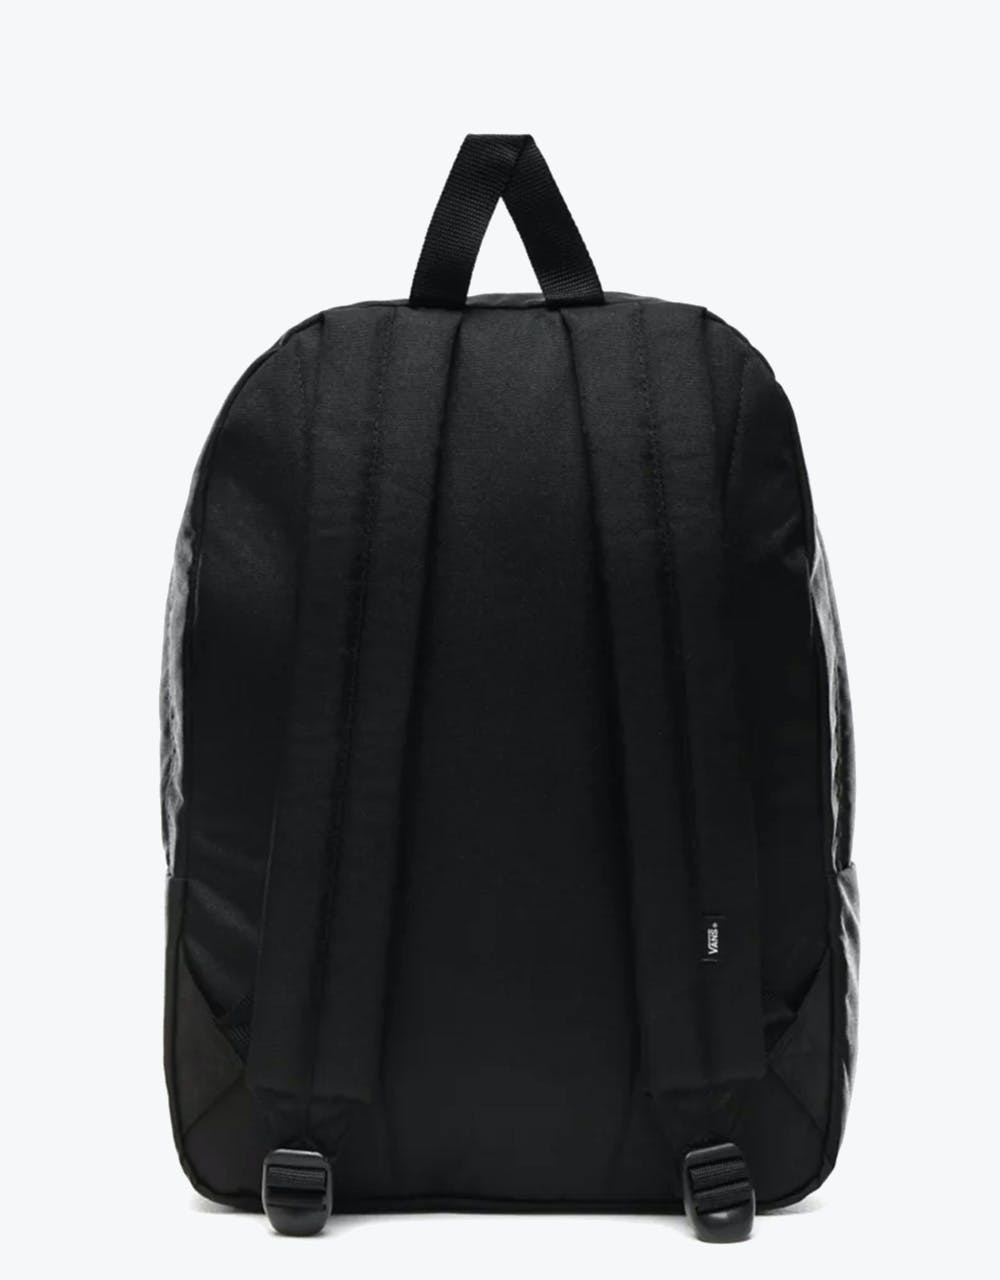 Vans Old Skool III Backpack - Black/White